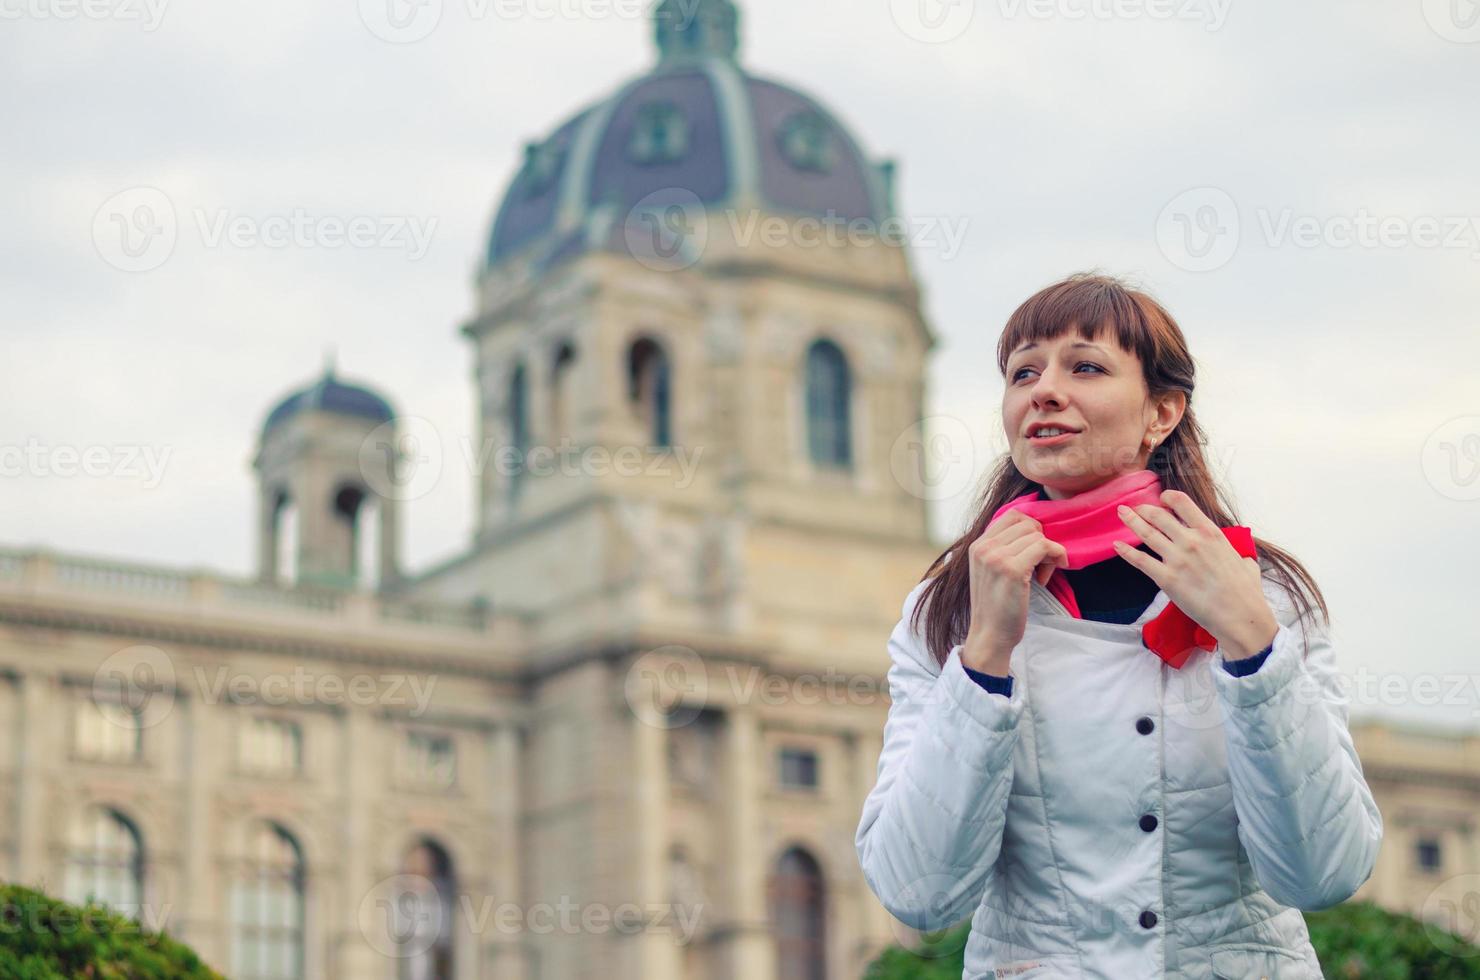 la giovane viaggiatrice con giacca bianca raddrizza la sciarpa rossa e distoglie lo sguardo, museo kunsthistorisches foto